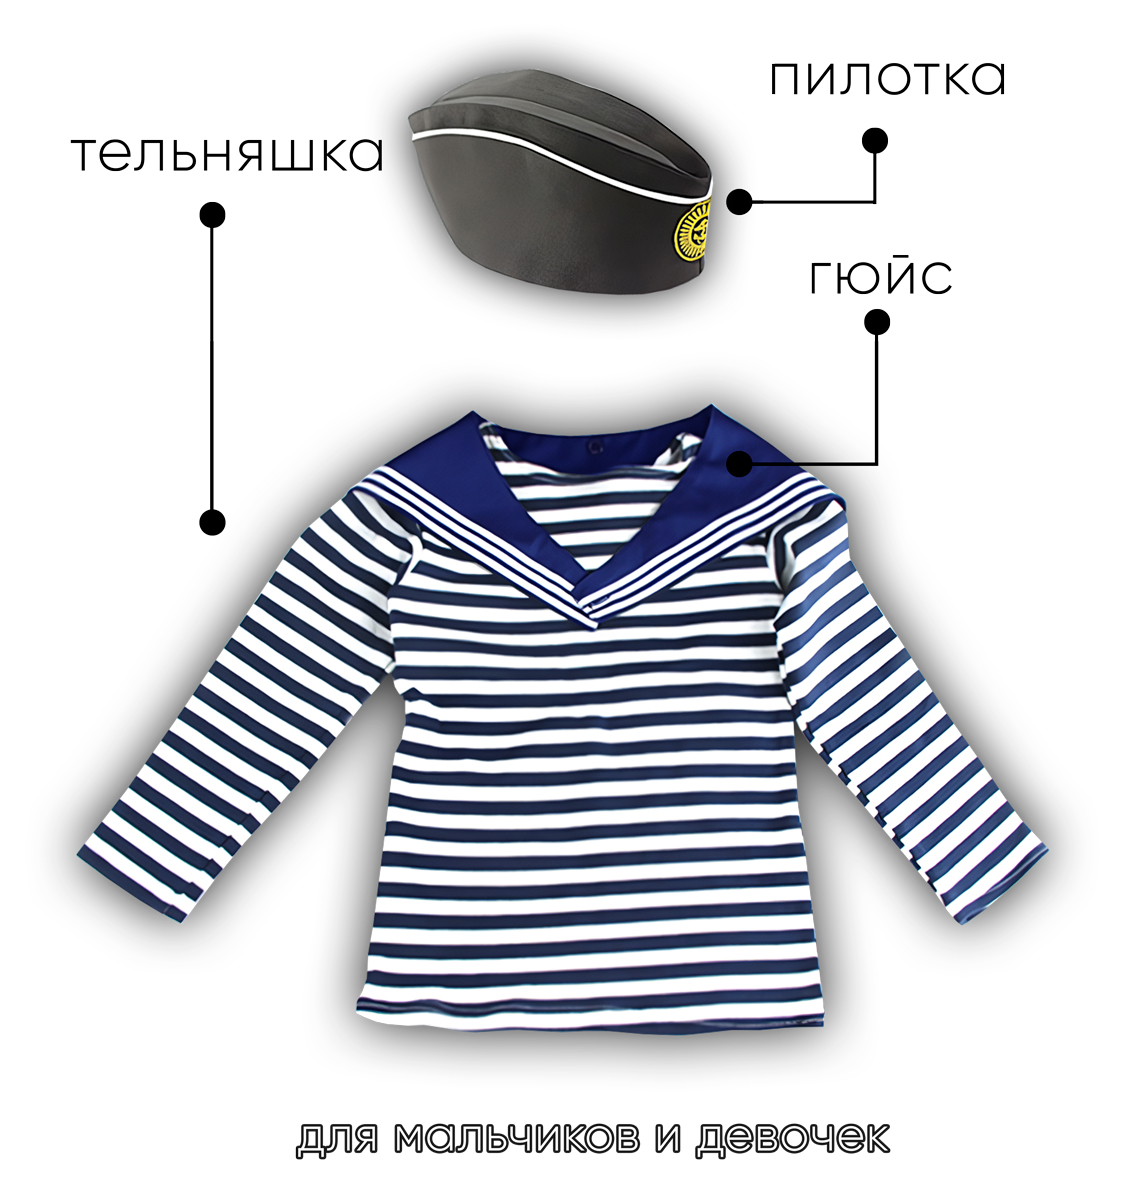 Детский набор матроса для утренника (тельняшка: 34 размер, пилотка детская: 56 размер (на рост 128-134, до 9 лет) и гюйс детский синий)